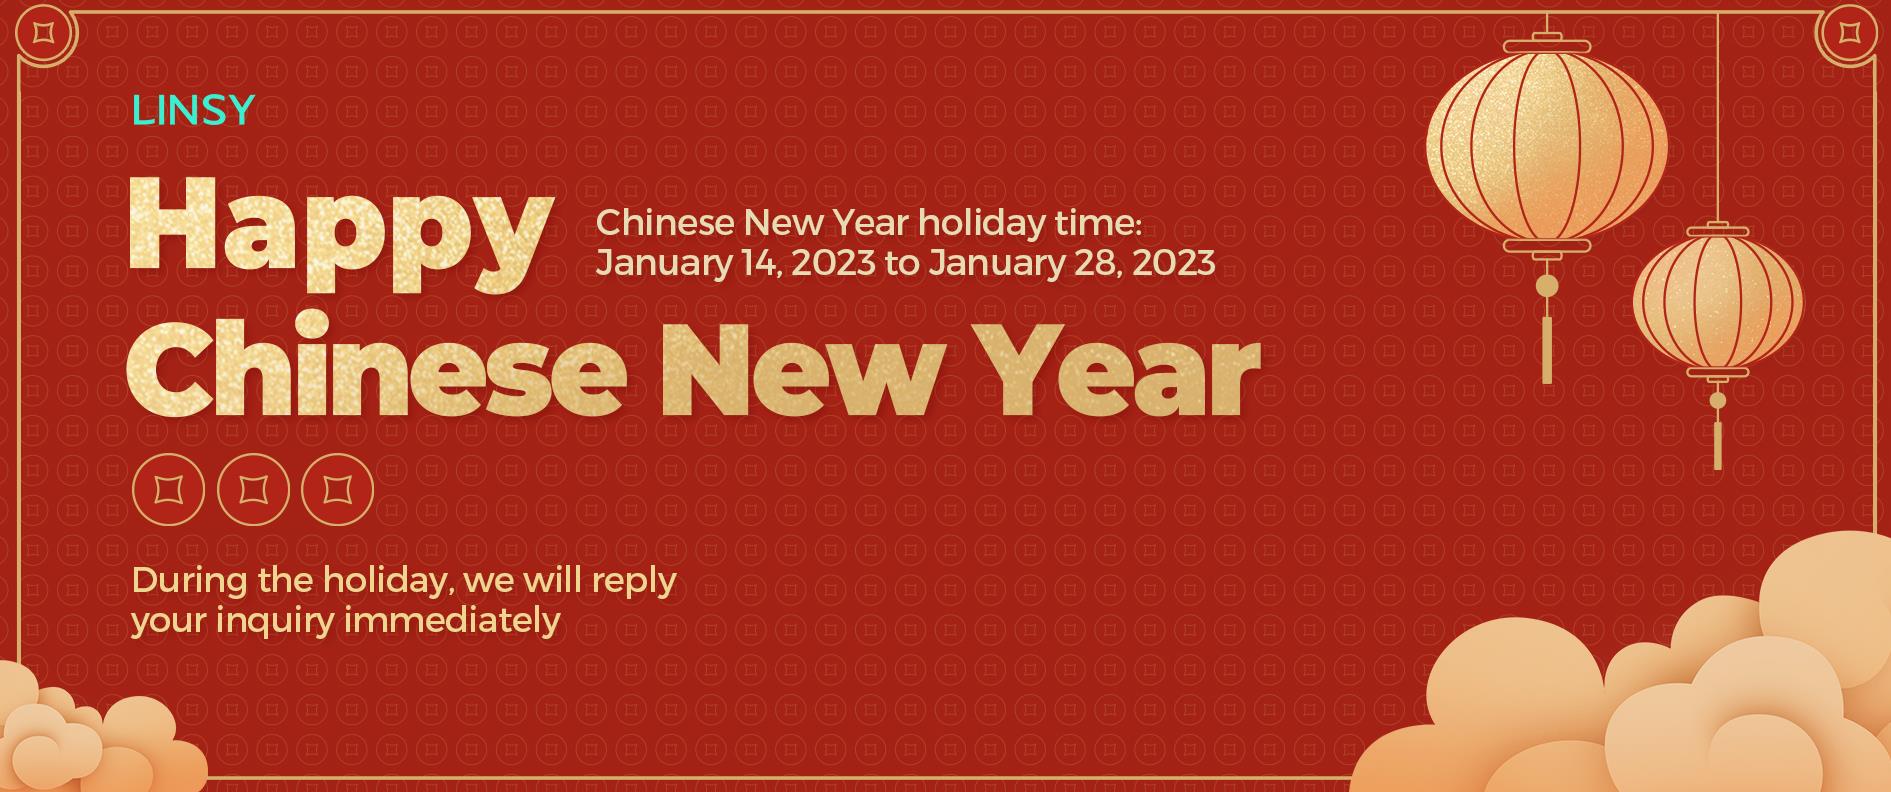 שנה סינית חדשה שמחה